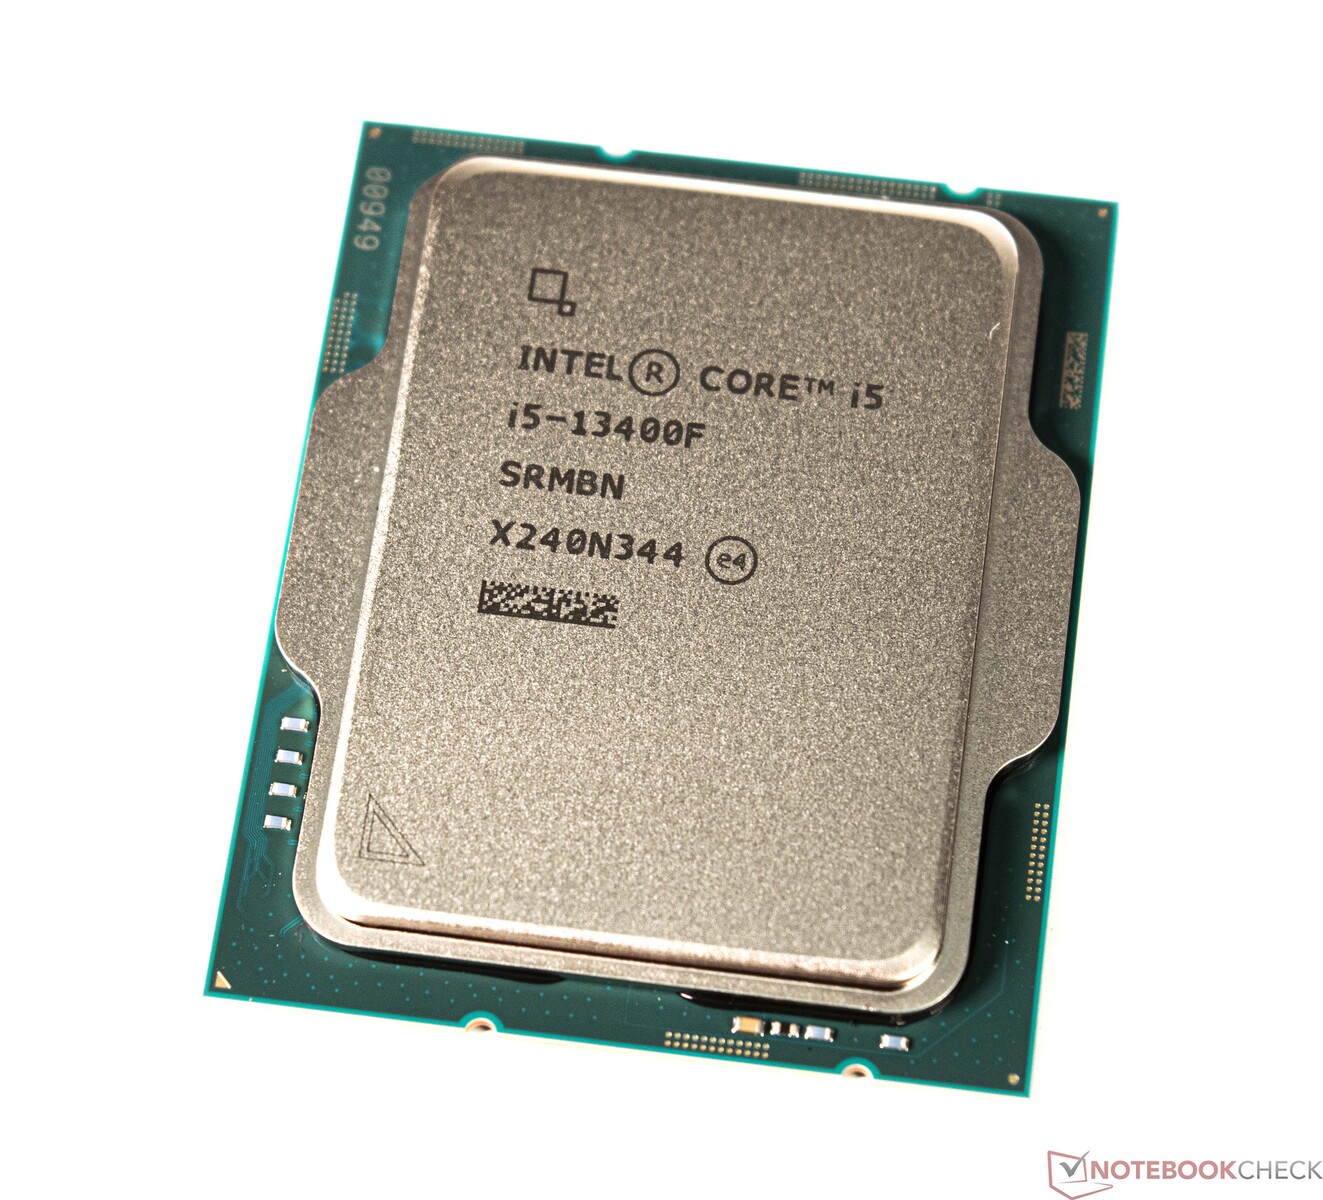 Specificiteit kennisgeving verzekering Intel Core i5-13400F desktop CPU in review: Zuinige en goedkope 10-core  processor voor gamen en werken - Notebookcheck.nl